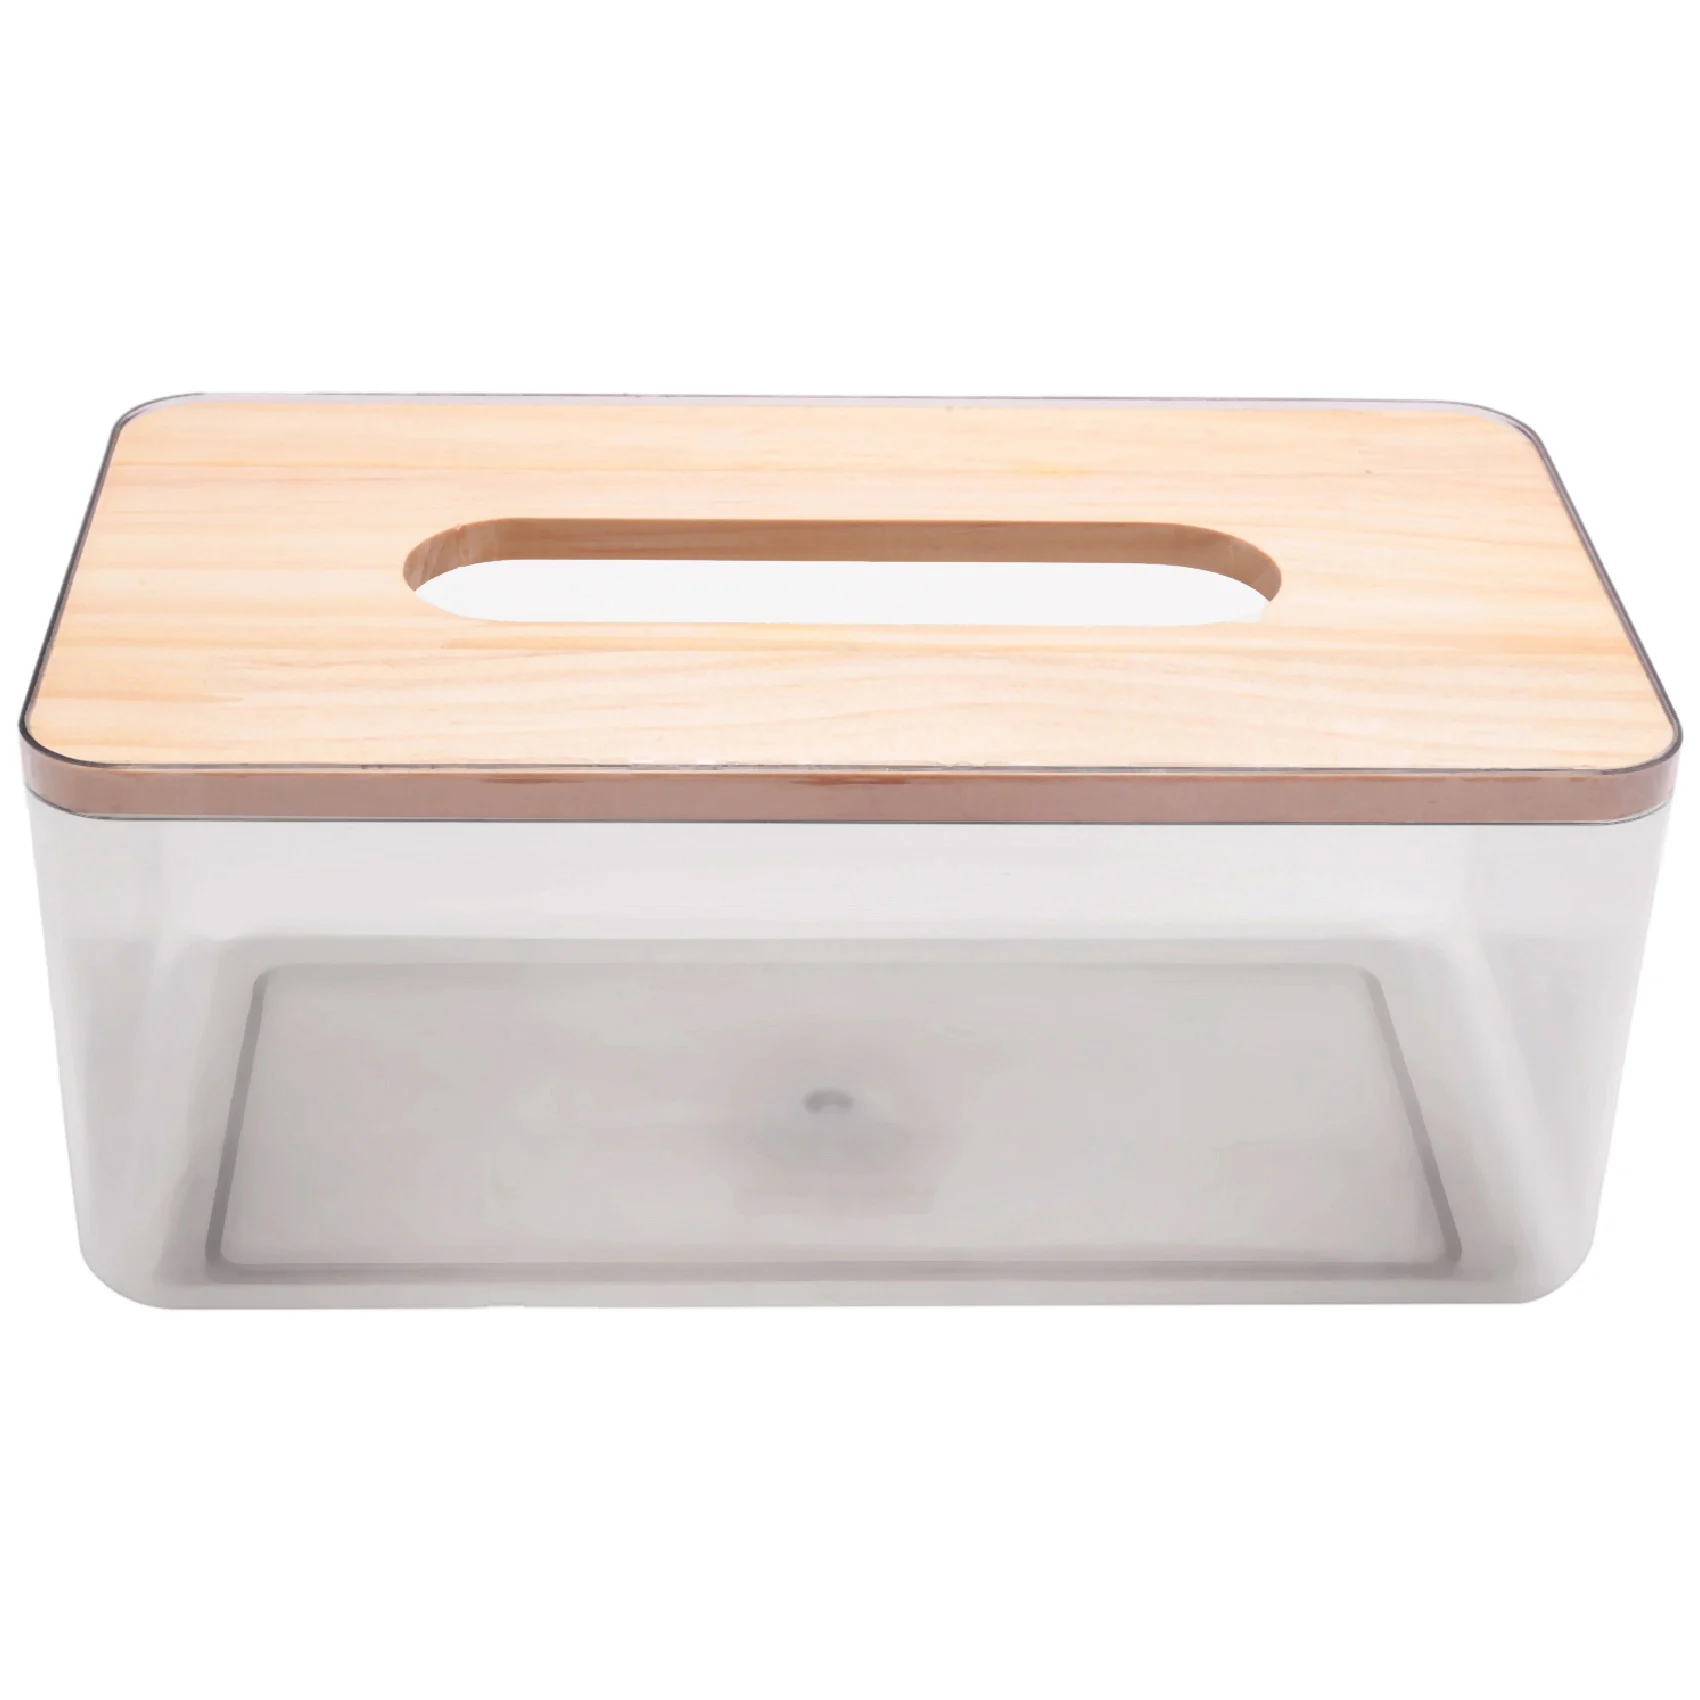 

Minimalist Tissue Box Cover Holder, Modern Transparent Rectangular Bamboo Facial Tissues Dispenser for Bathroom, Bedroom